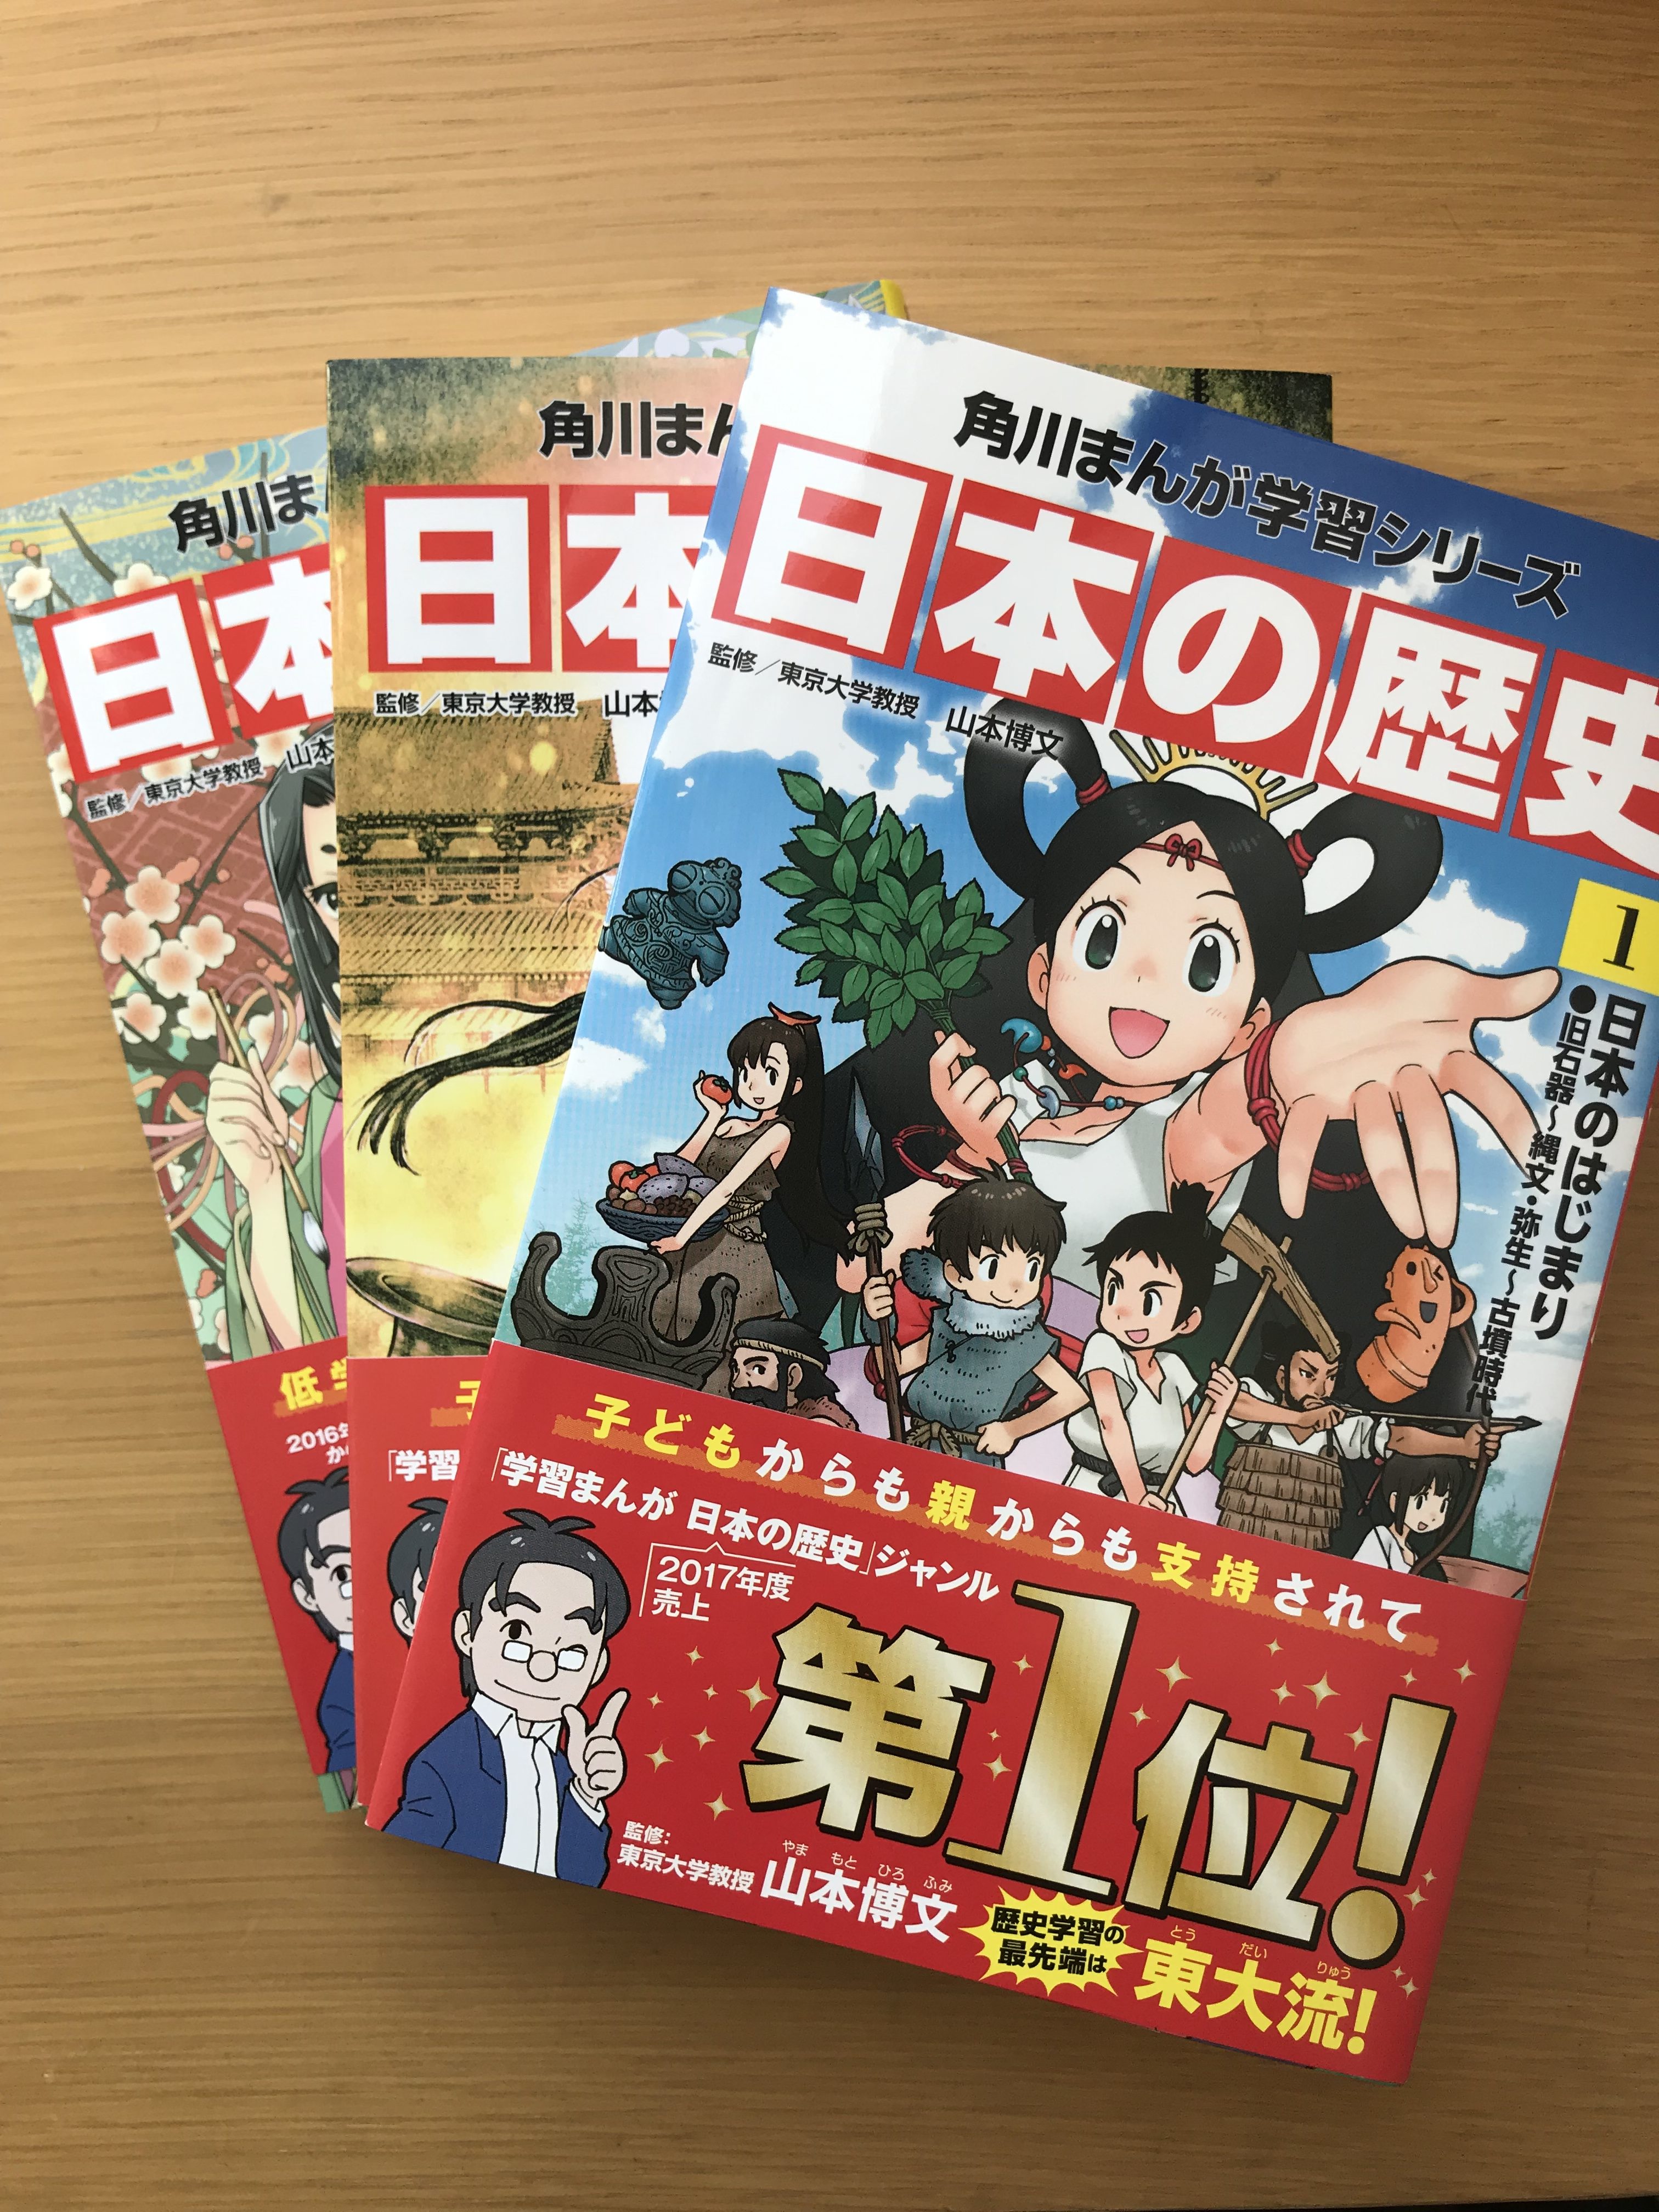 【評価・レビュー】中学受験に役立つ漫画「角川まんが学習シリーズ 日本の歴史」を購入しました。他社と比較して、角川に決めた理由やおすすめポイントをご紹介します。 | STUDY！